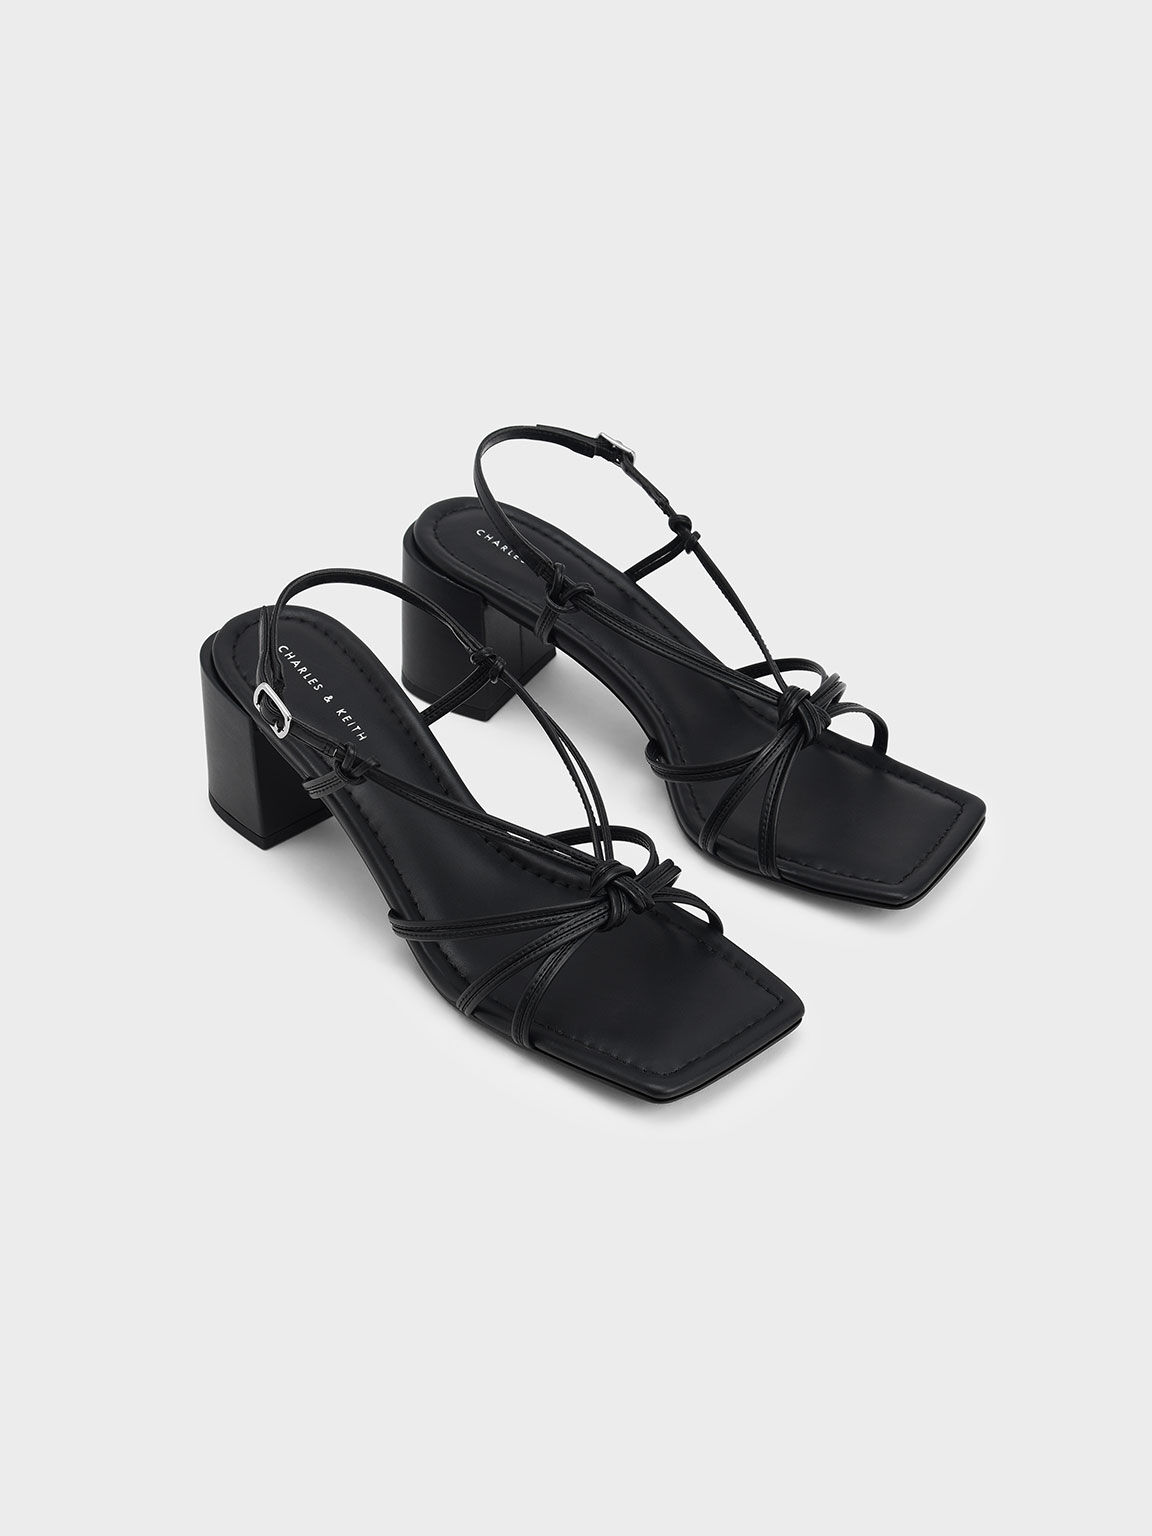 Knotted Slingback Heeled Sandals, Black, hi-res